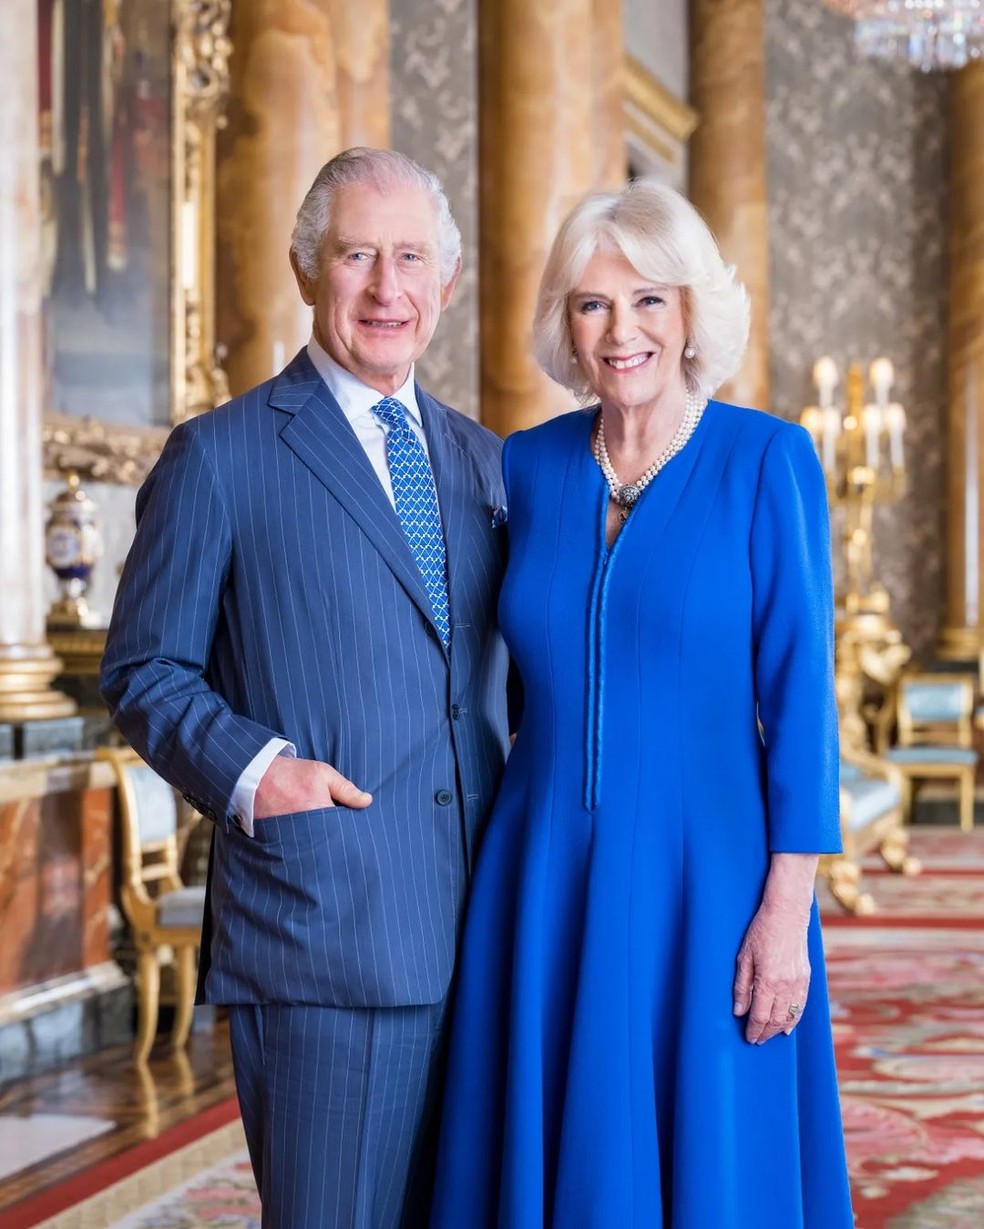 Foto oficial do Rei Charles III e da Rainha consorte Camilla para a cerimônia de coroação — Foto: reprodução/Instagram